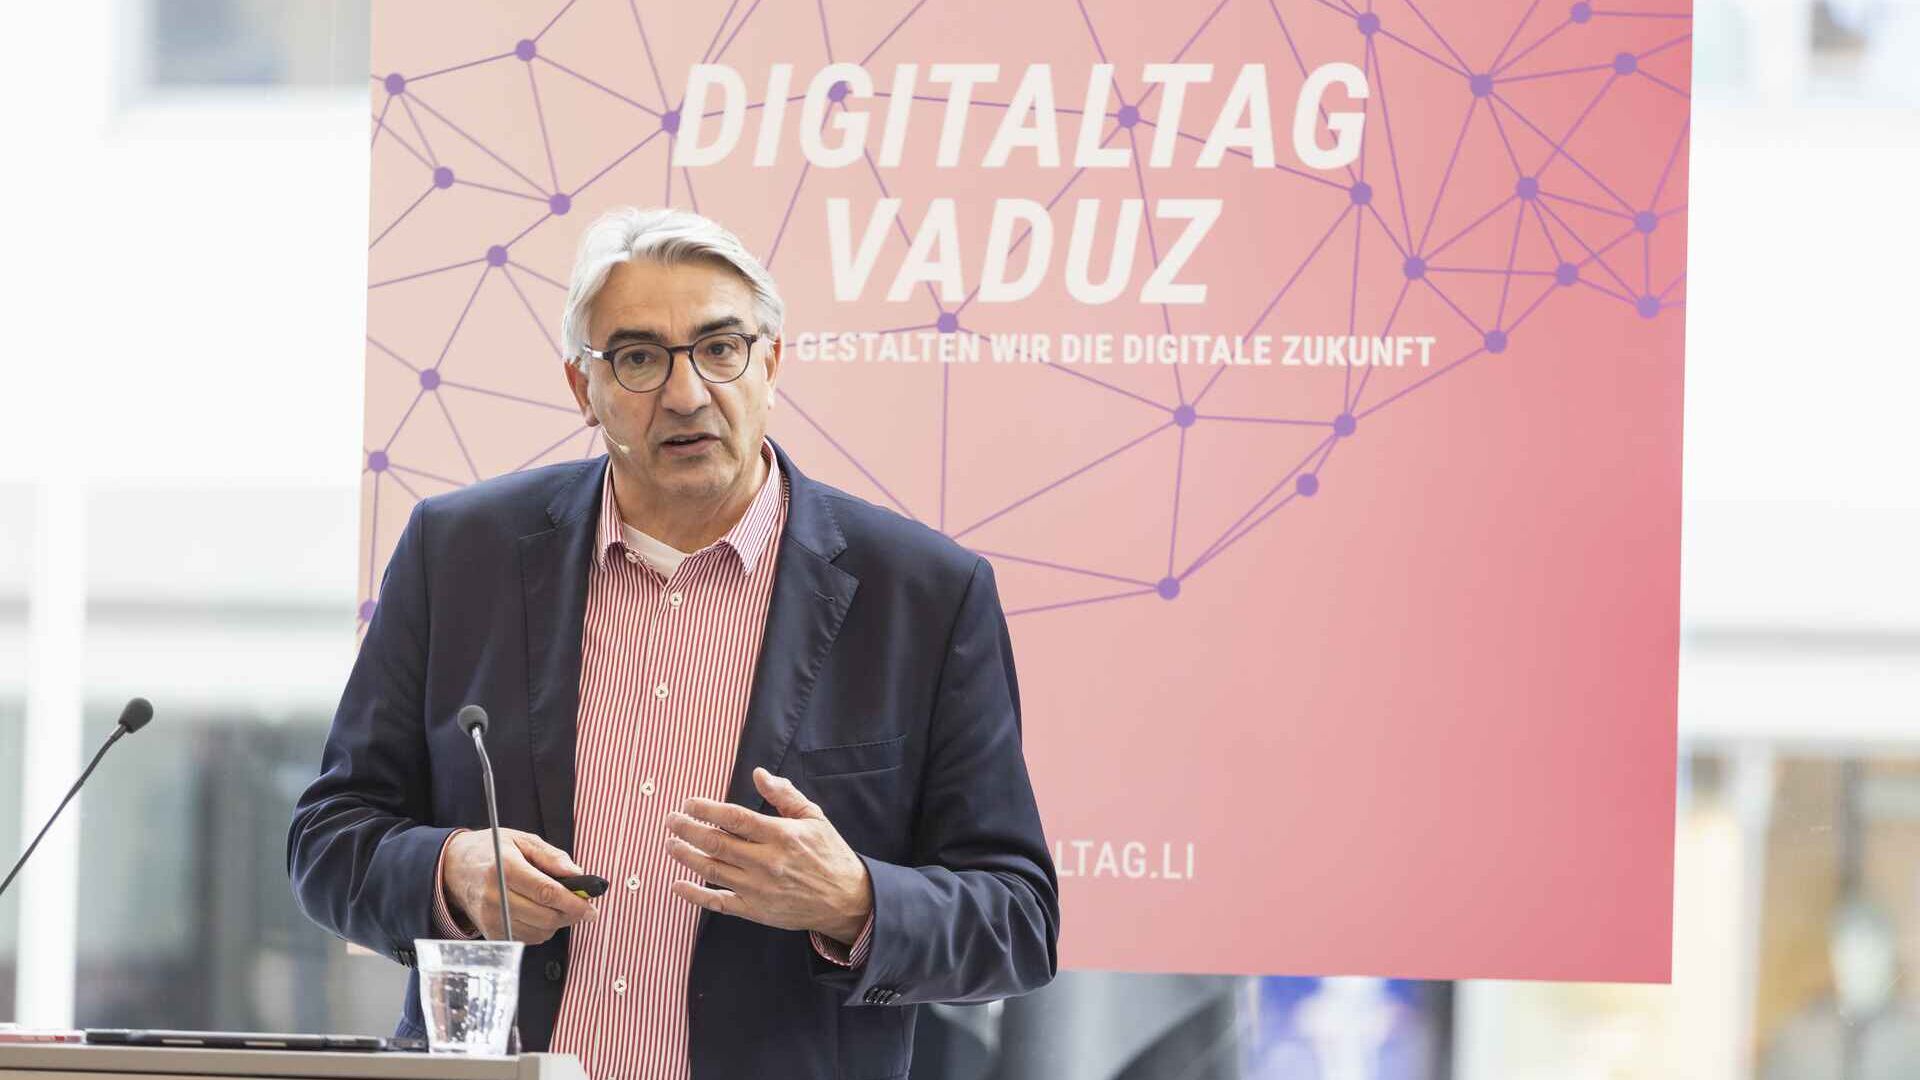 Ang "Digitaltag Vaduz" ay tinanggap ng Kunstmuseum ng kabisera ng Principality of Liechtenstein noong Sabado 15 Oktubre 2022